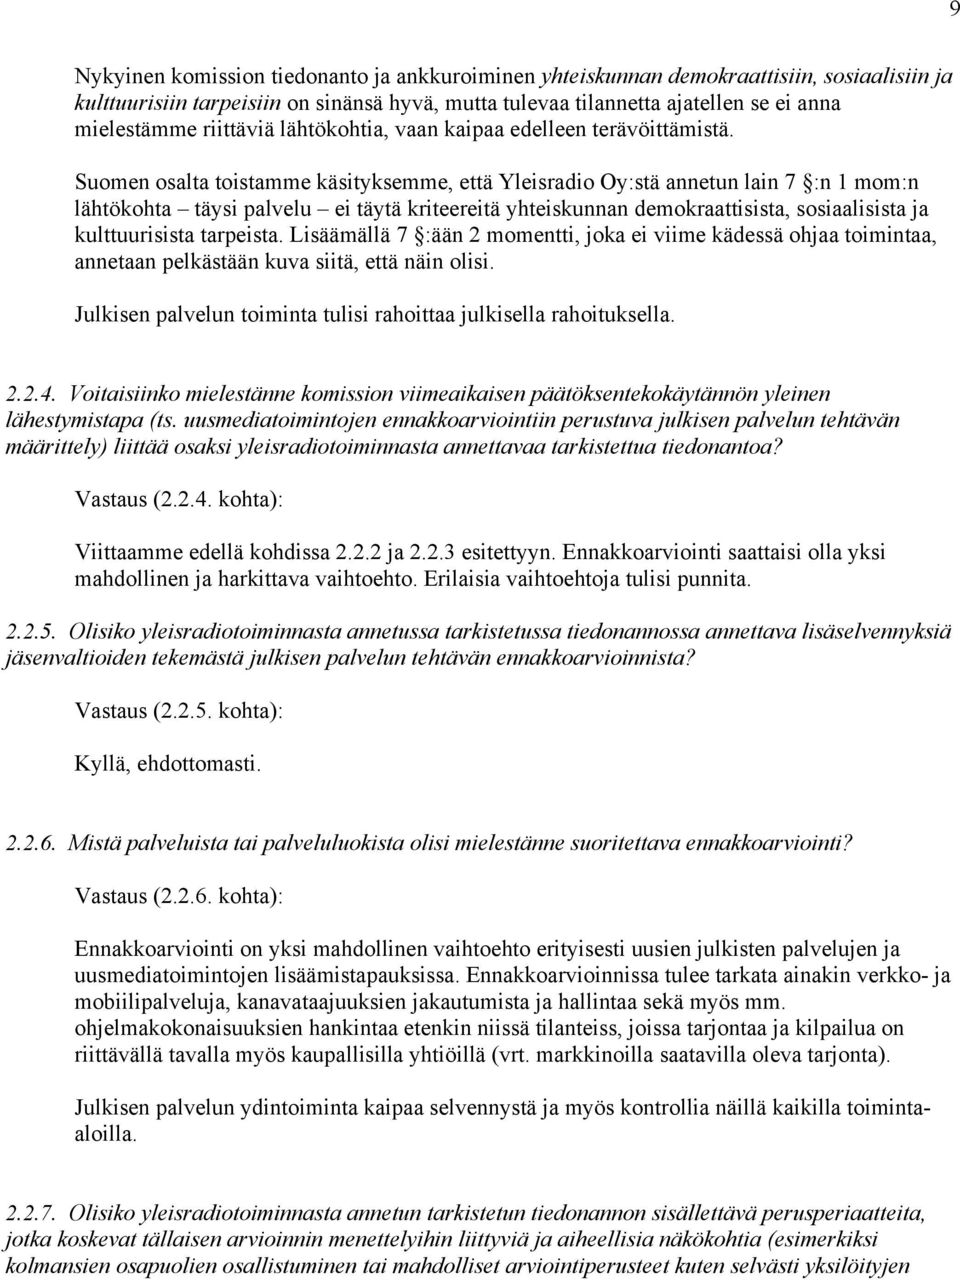 Suomen osalta toistamme käsityksemme, että Yleisradio Oy:stä annetun lain 7 :n 1 mom:n lähtökohta täysi palvelu ei täytä kriteereitä yhteiskunnan demokraattisista, sosiaalisista ja kulttuurisista